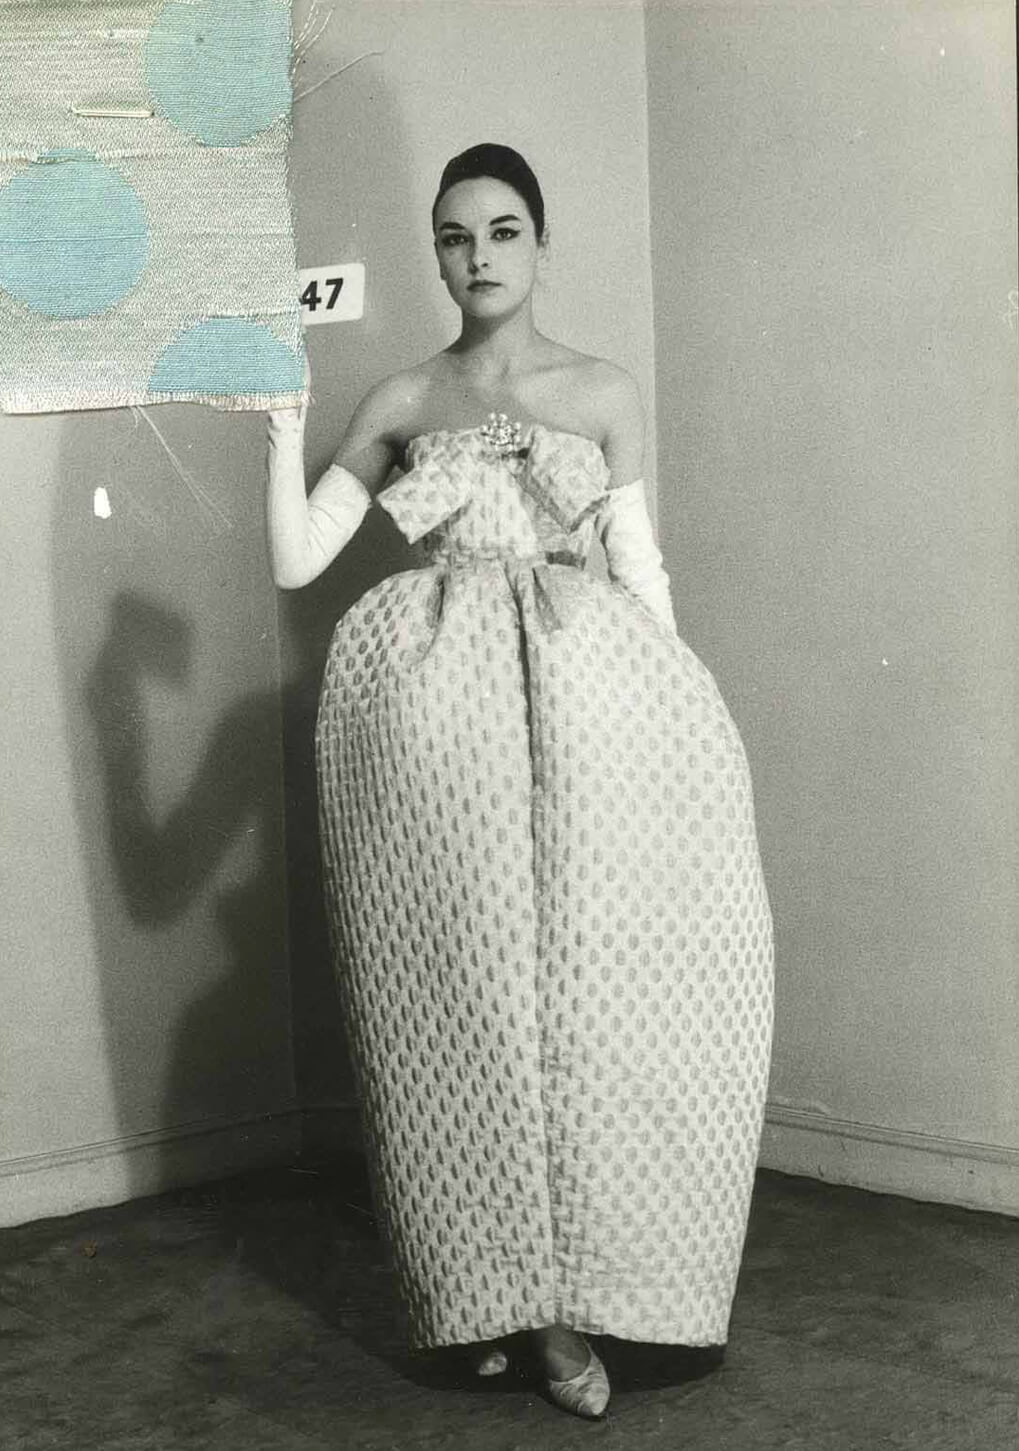 How Balenciaga shaped fashion - and made Audrey Hepburn froth at